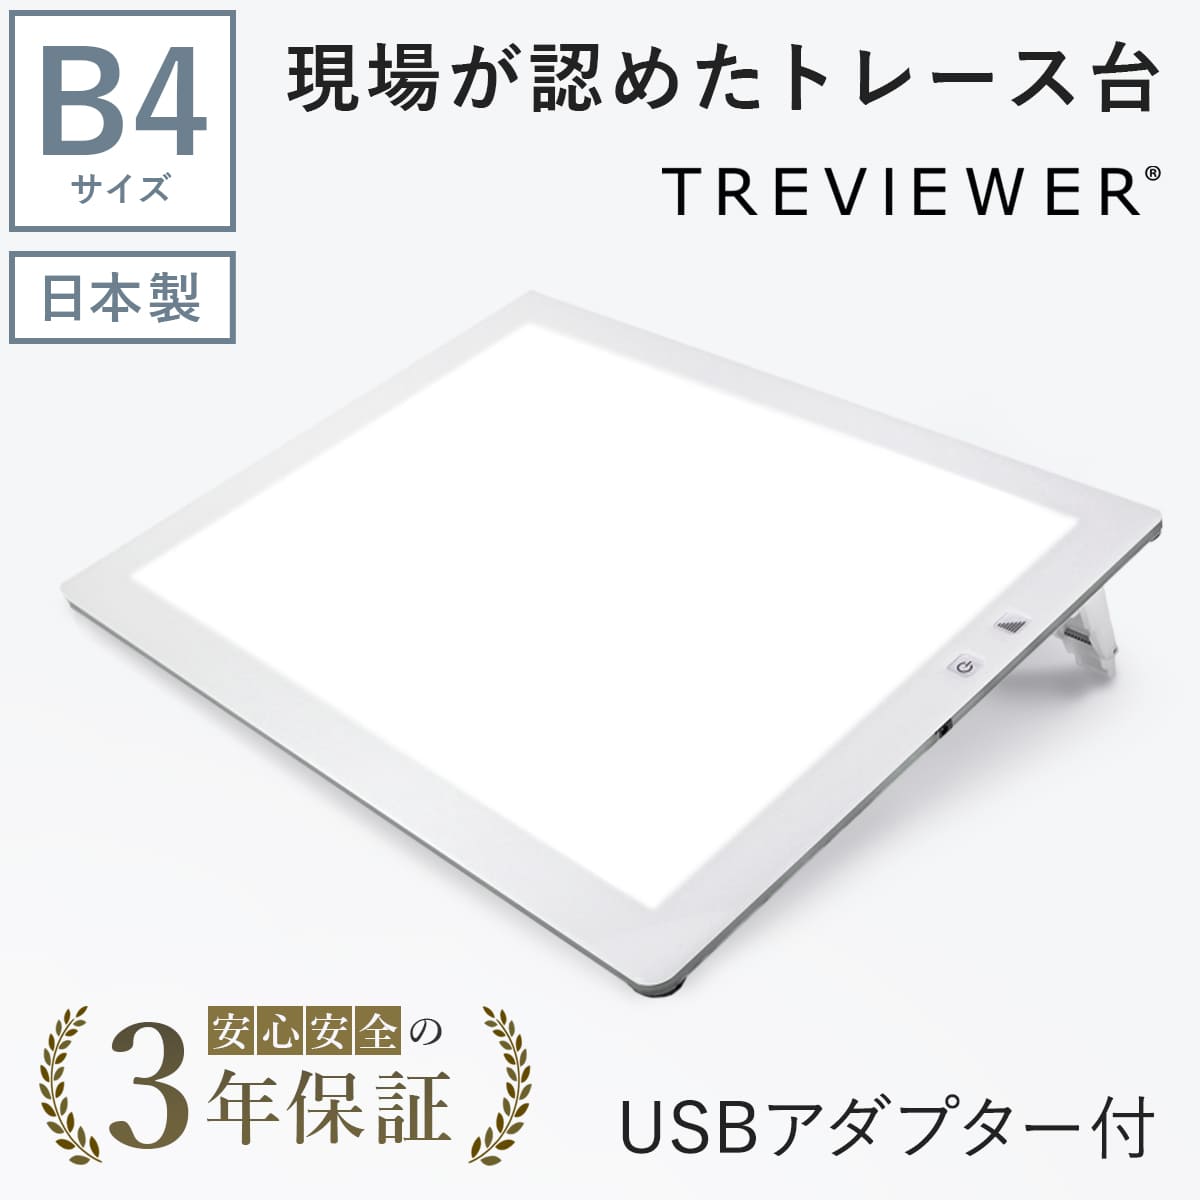 【日本製】 トレース台 トレビュアー B4 ホワイト  USBケーブル付き 薄型 7段階調光 3年保証 B4-500-W-02 ライトボックス ライトボード ライトテーブル トライテック